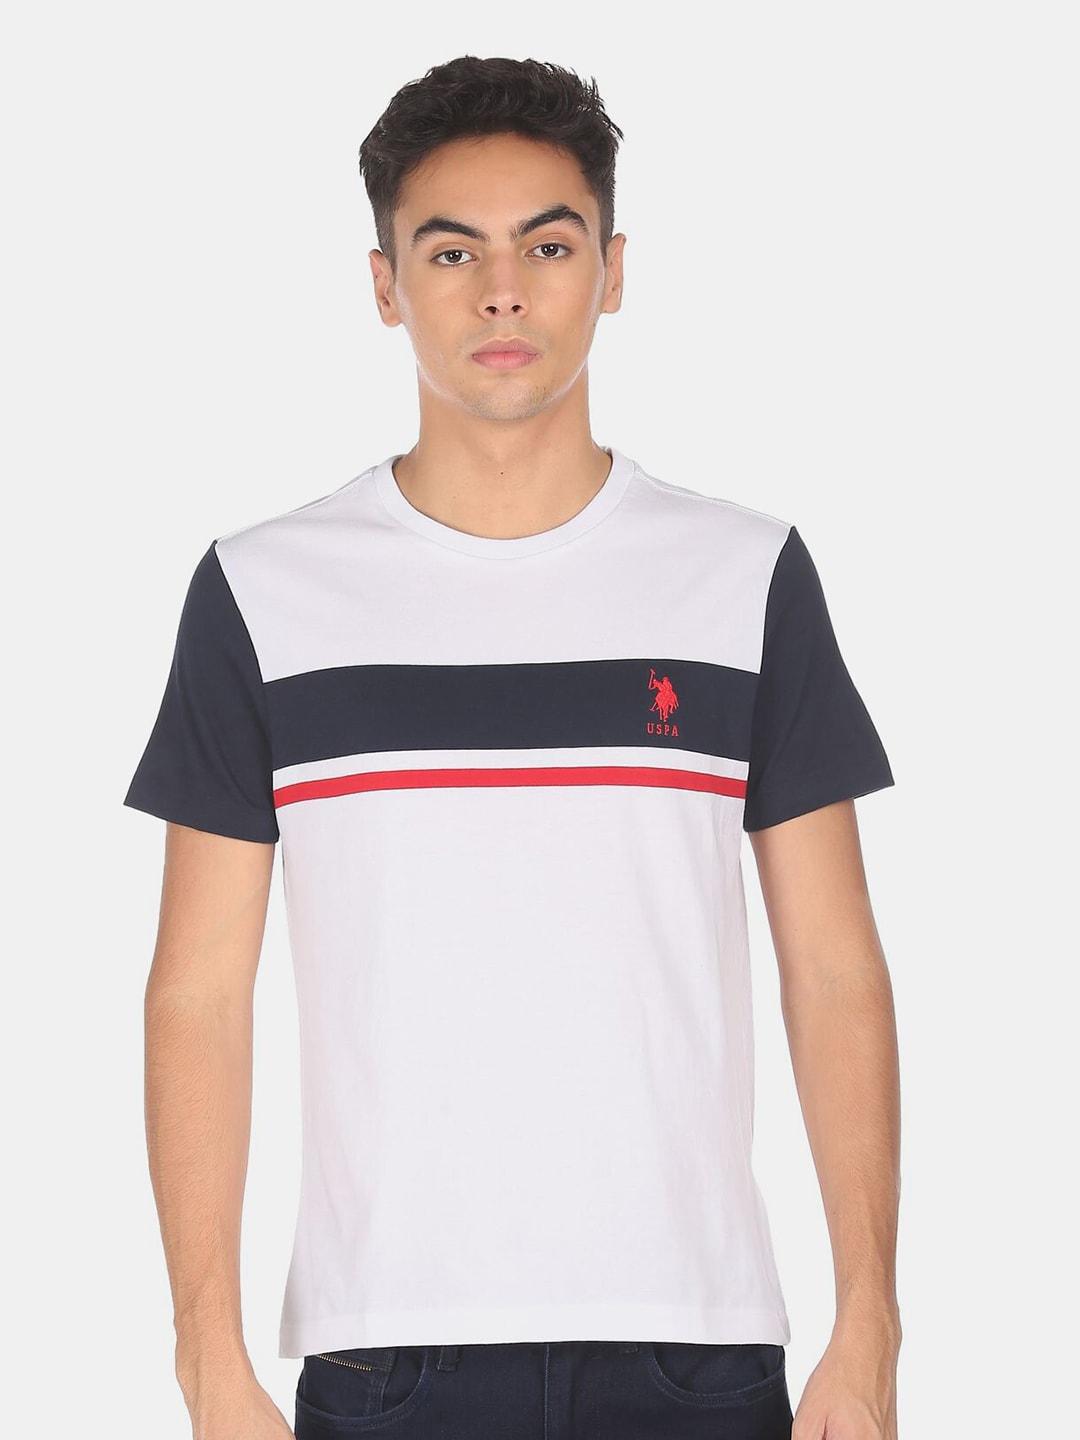 u-s-polo-assn-men-white-colourblocked-applique-t-shirt